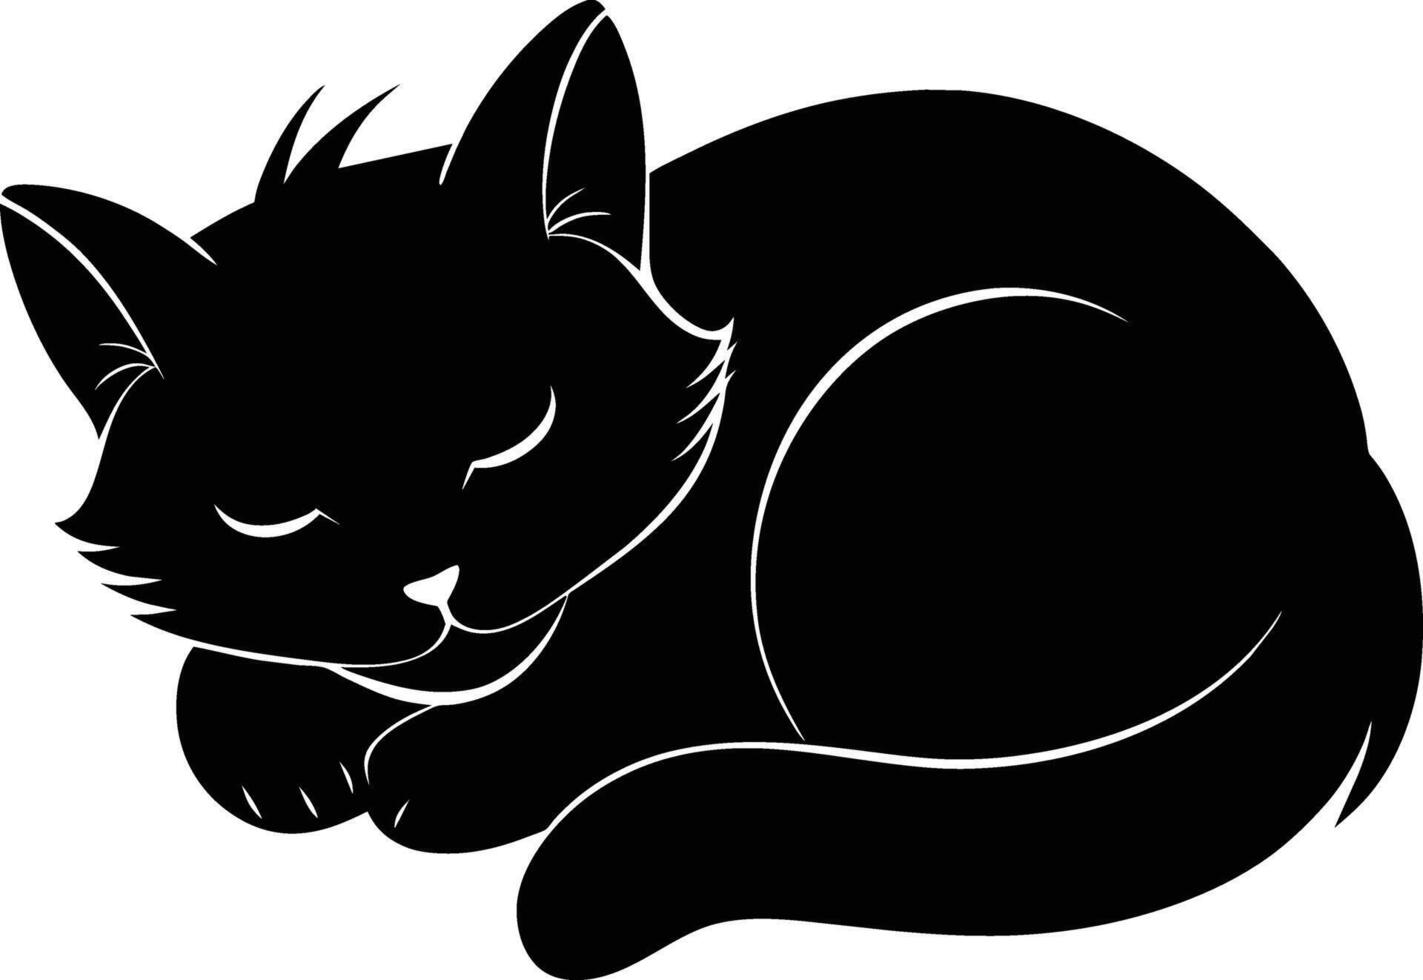 silenzioso serenità un' grazioso silhouette di un' addormentato gatto vettore